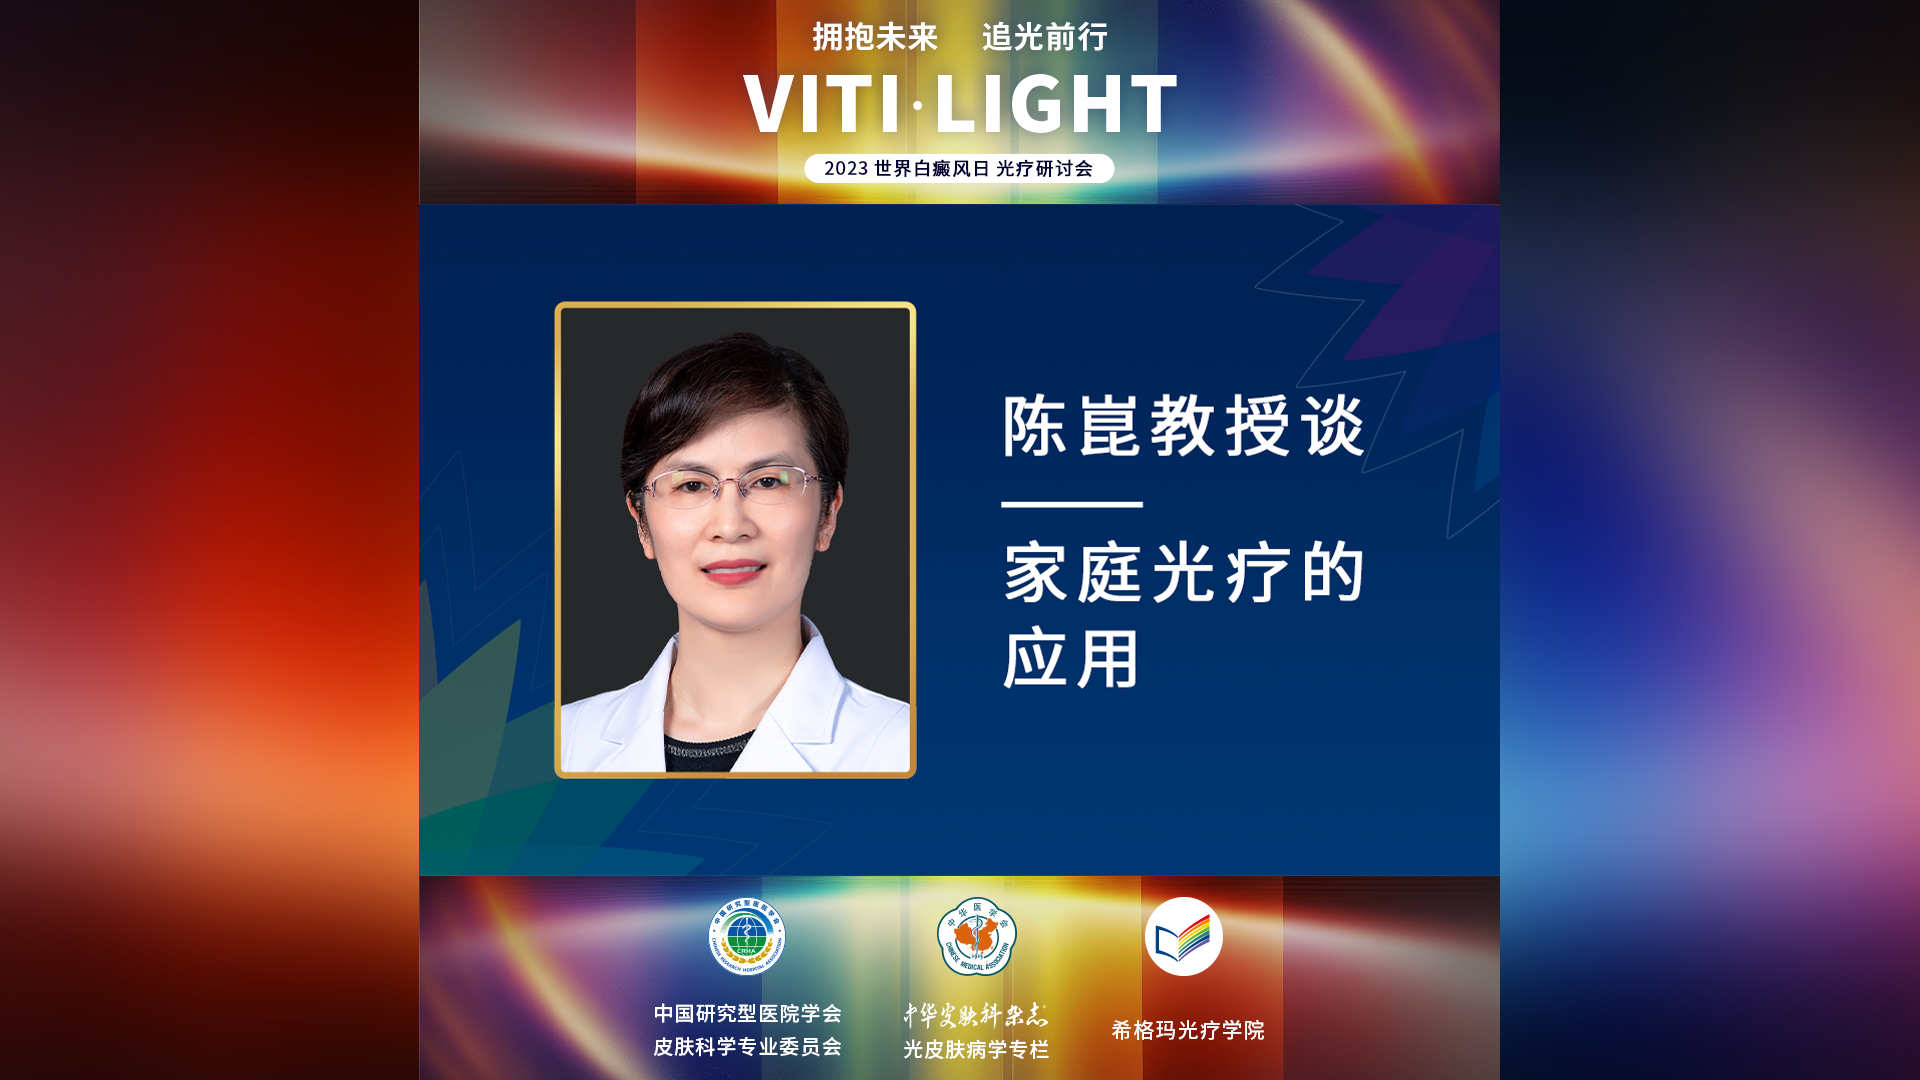 陈崑教授：家庭光疗的应用